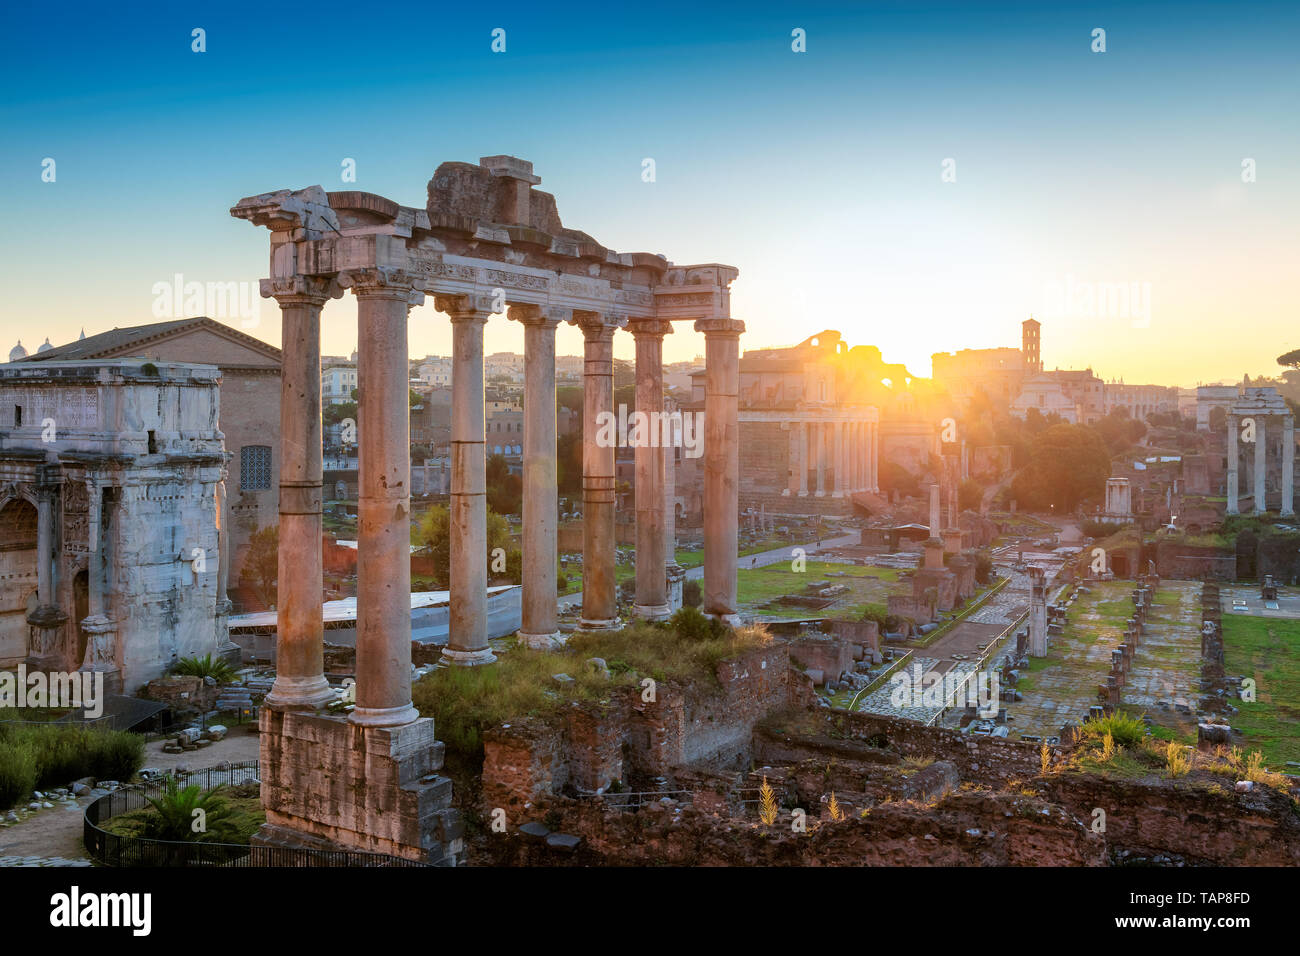 Lever du soleil sur le Forum romain de Rome, Italie Banque D'Images